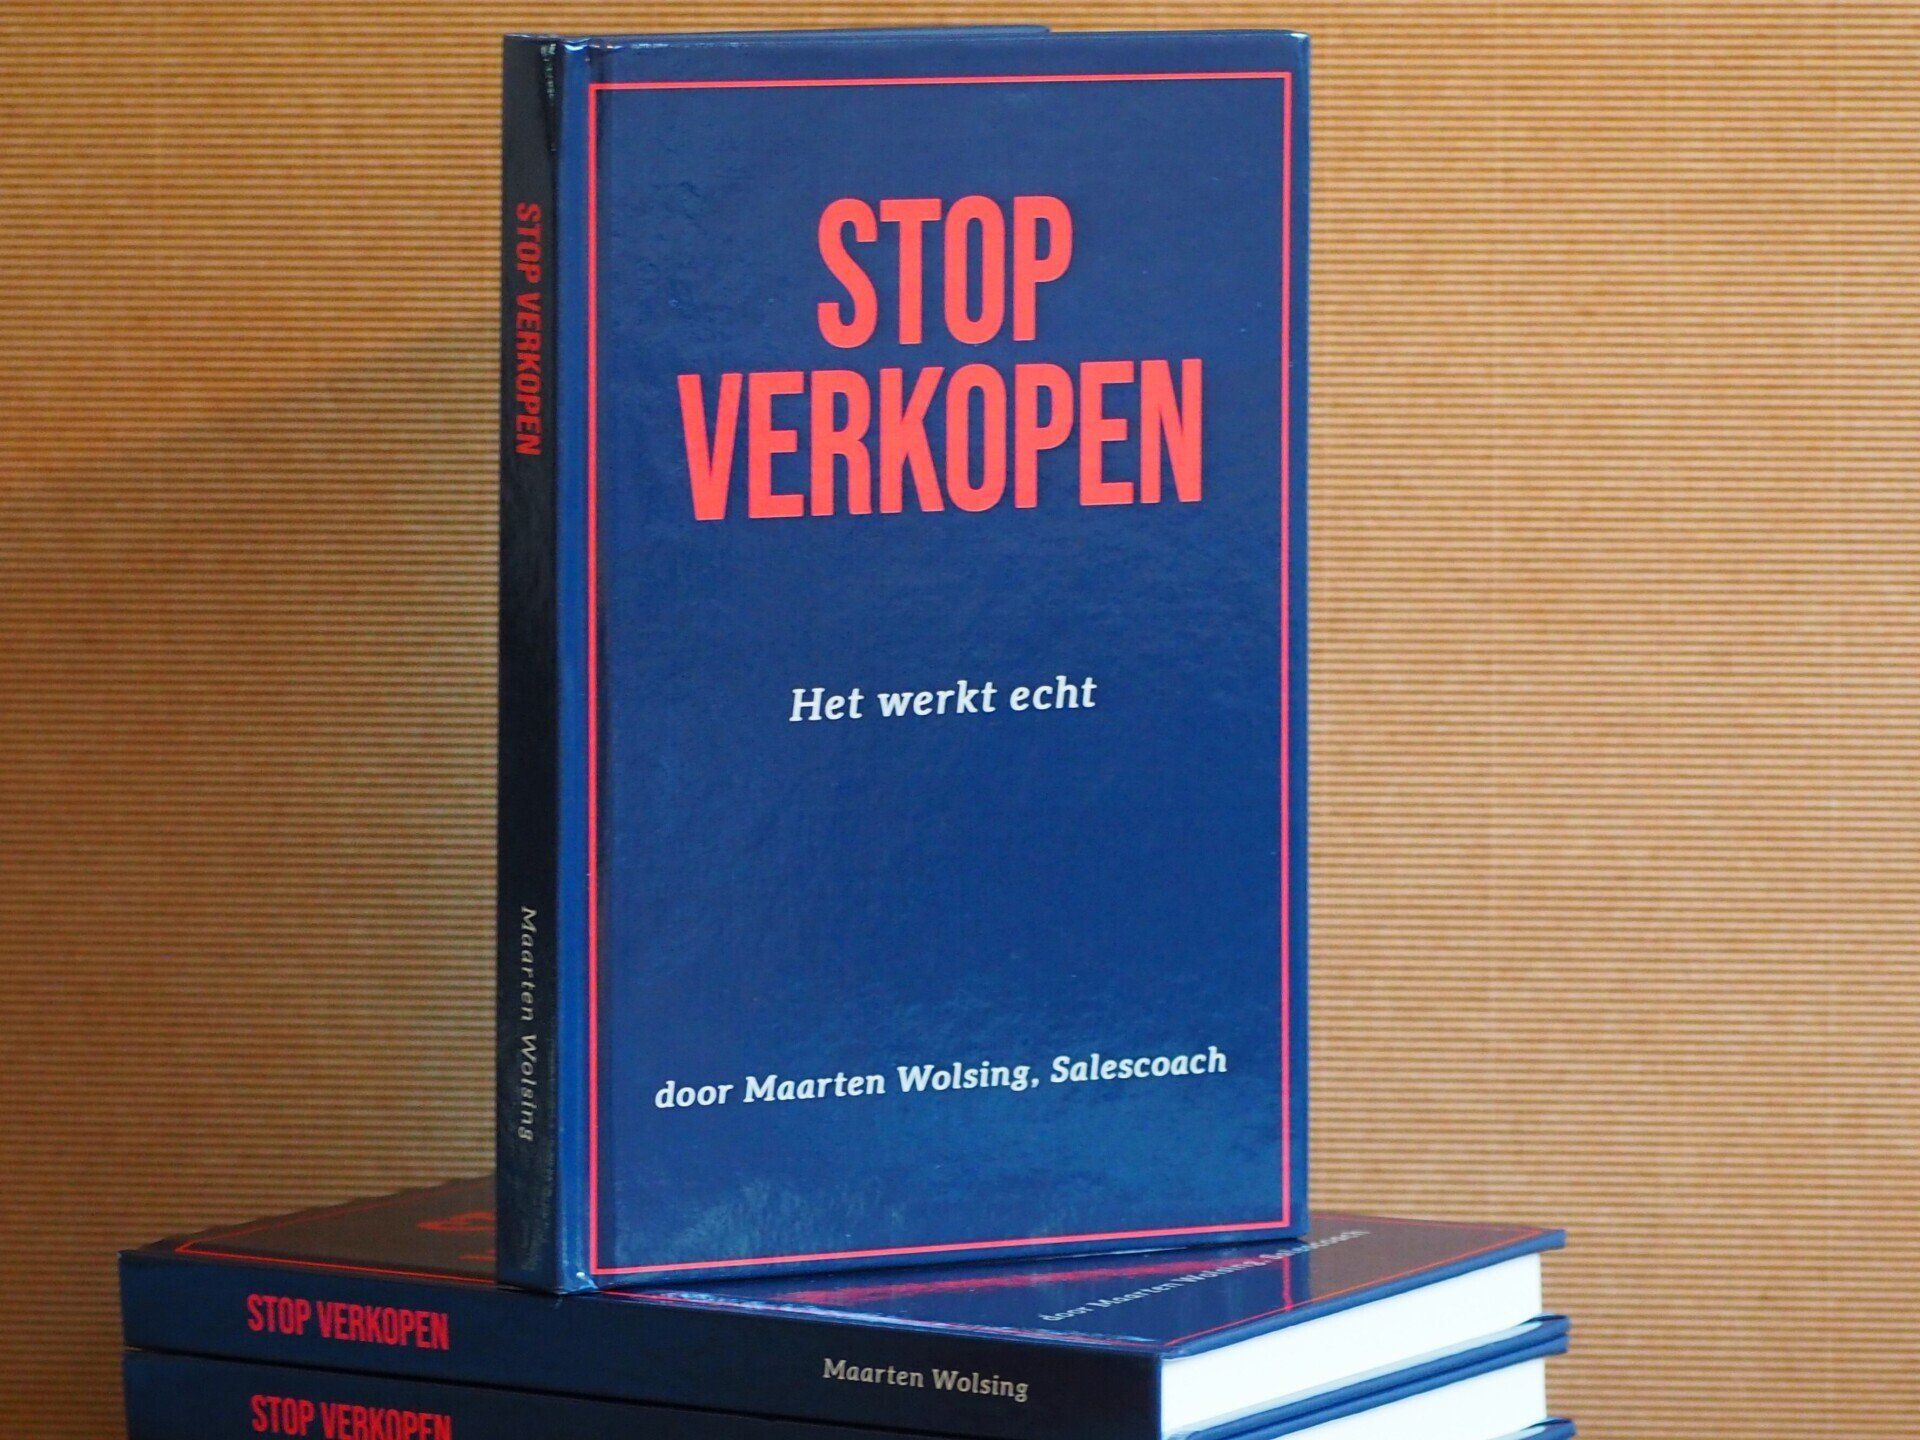 Een boek met de titel stop verkopen wordt op andere boeken gestapeld